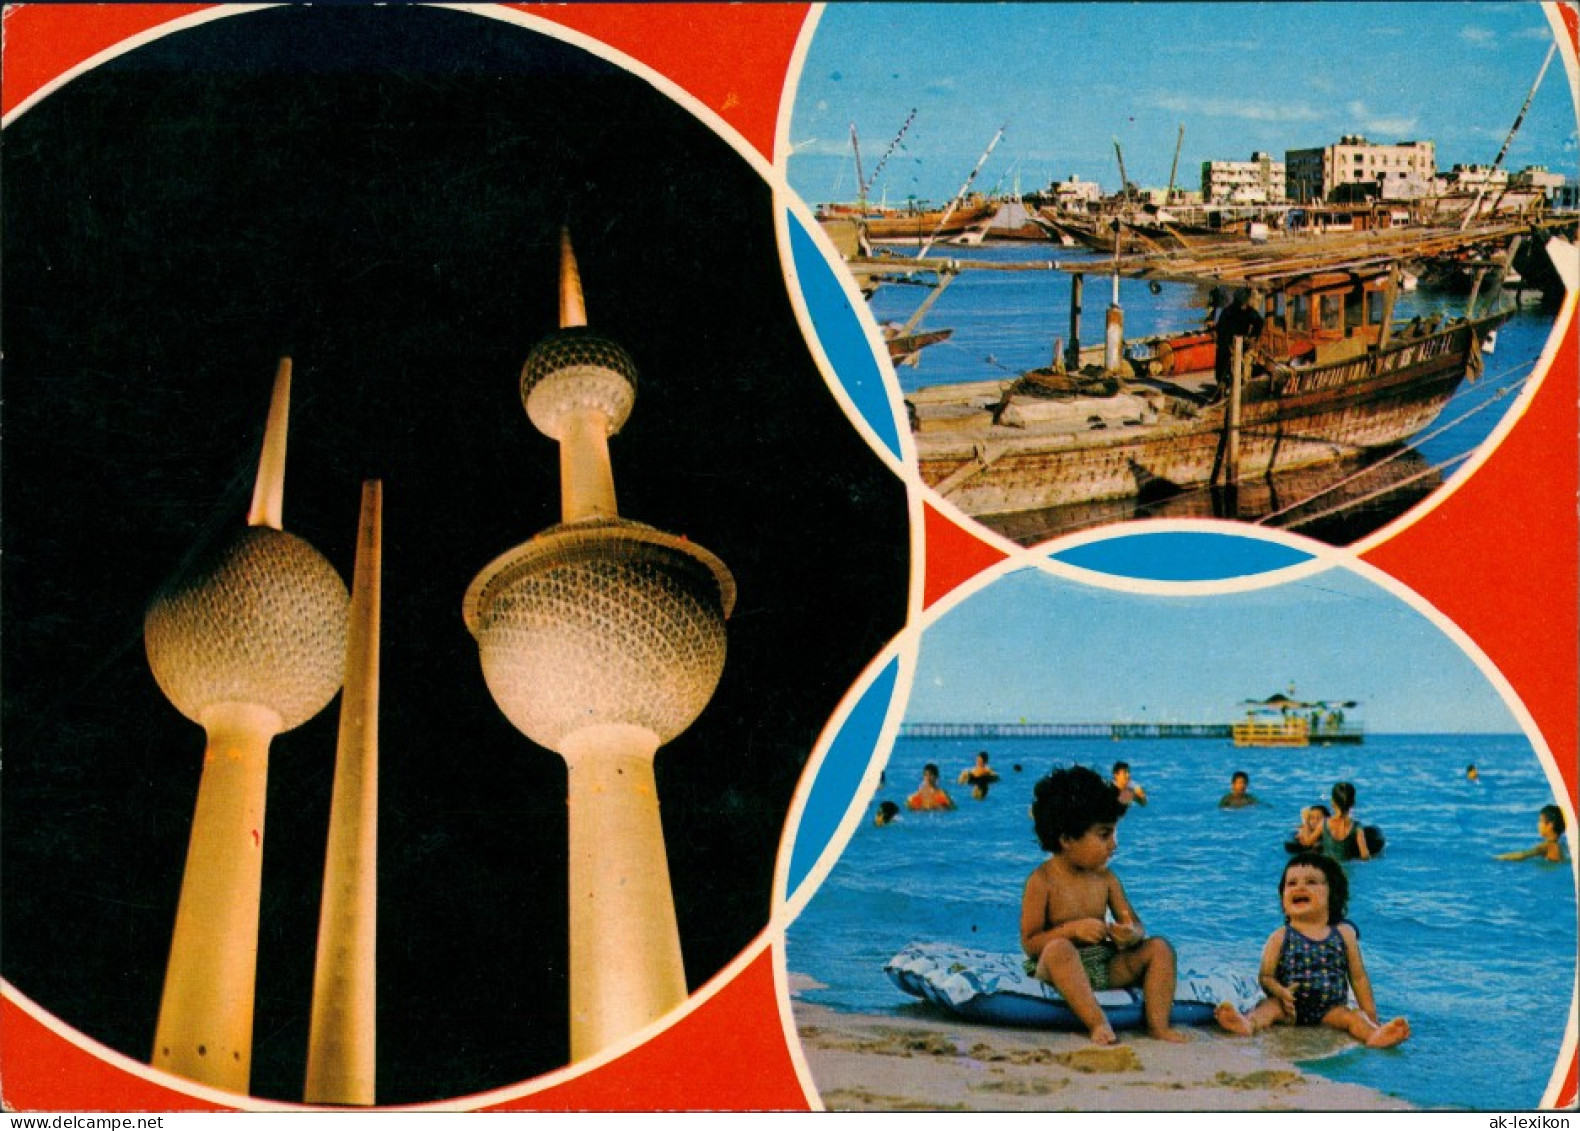 Kuwait-Stadt الكويت 3 Bild Badende, Hafen, Tower - الكويت 1973 - Kuwait